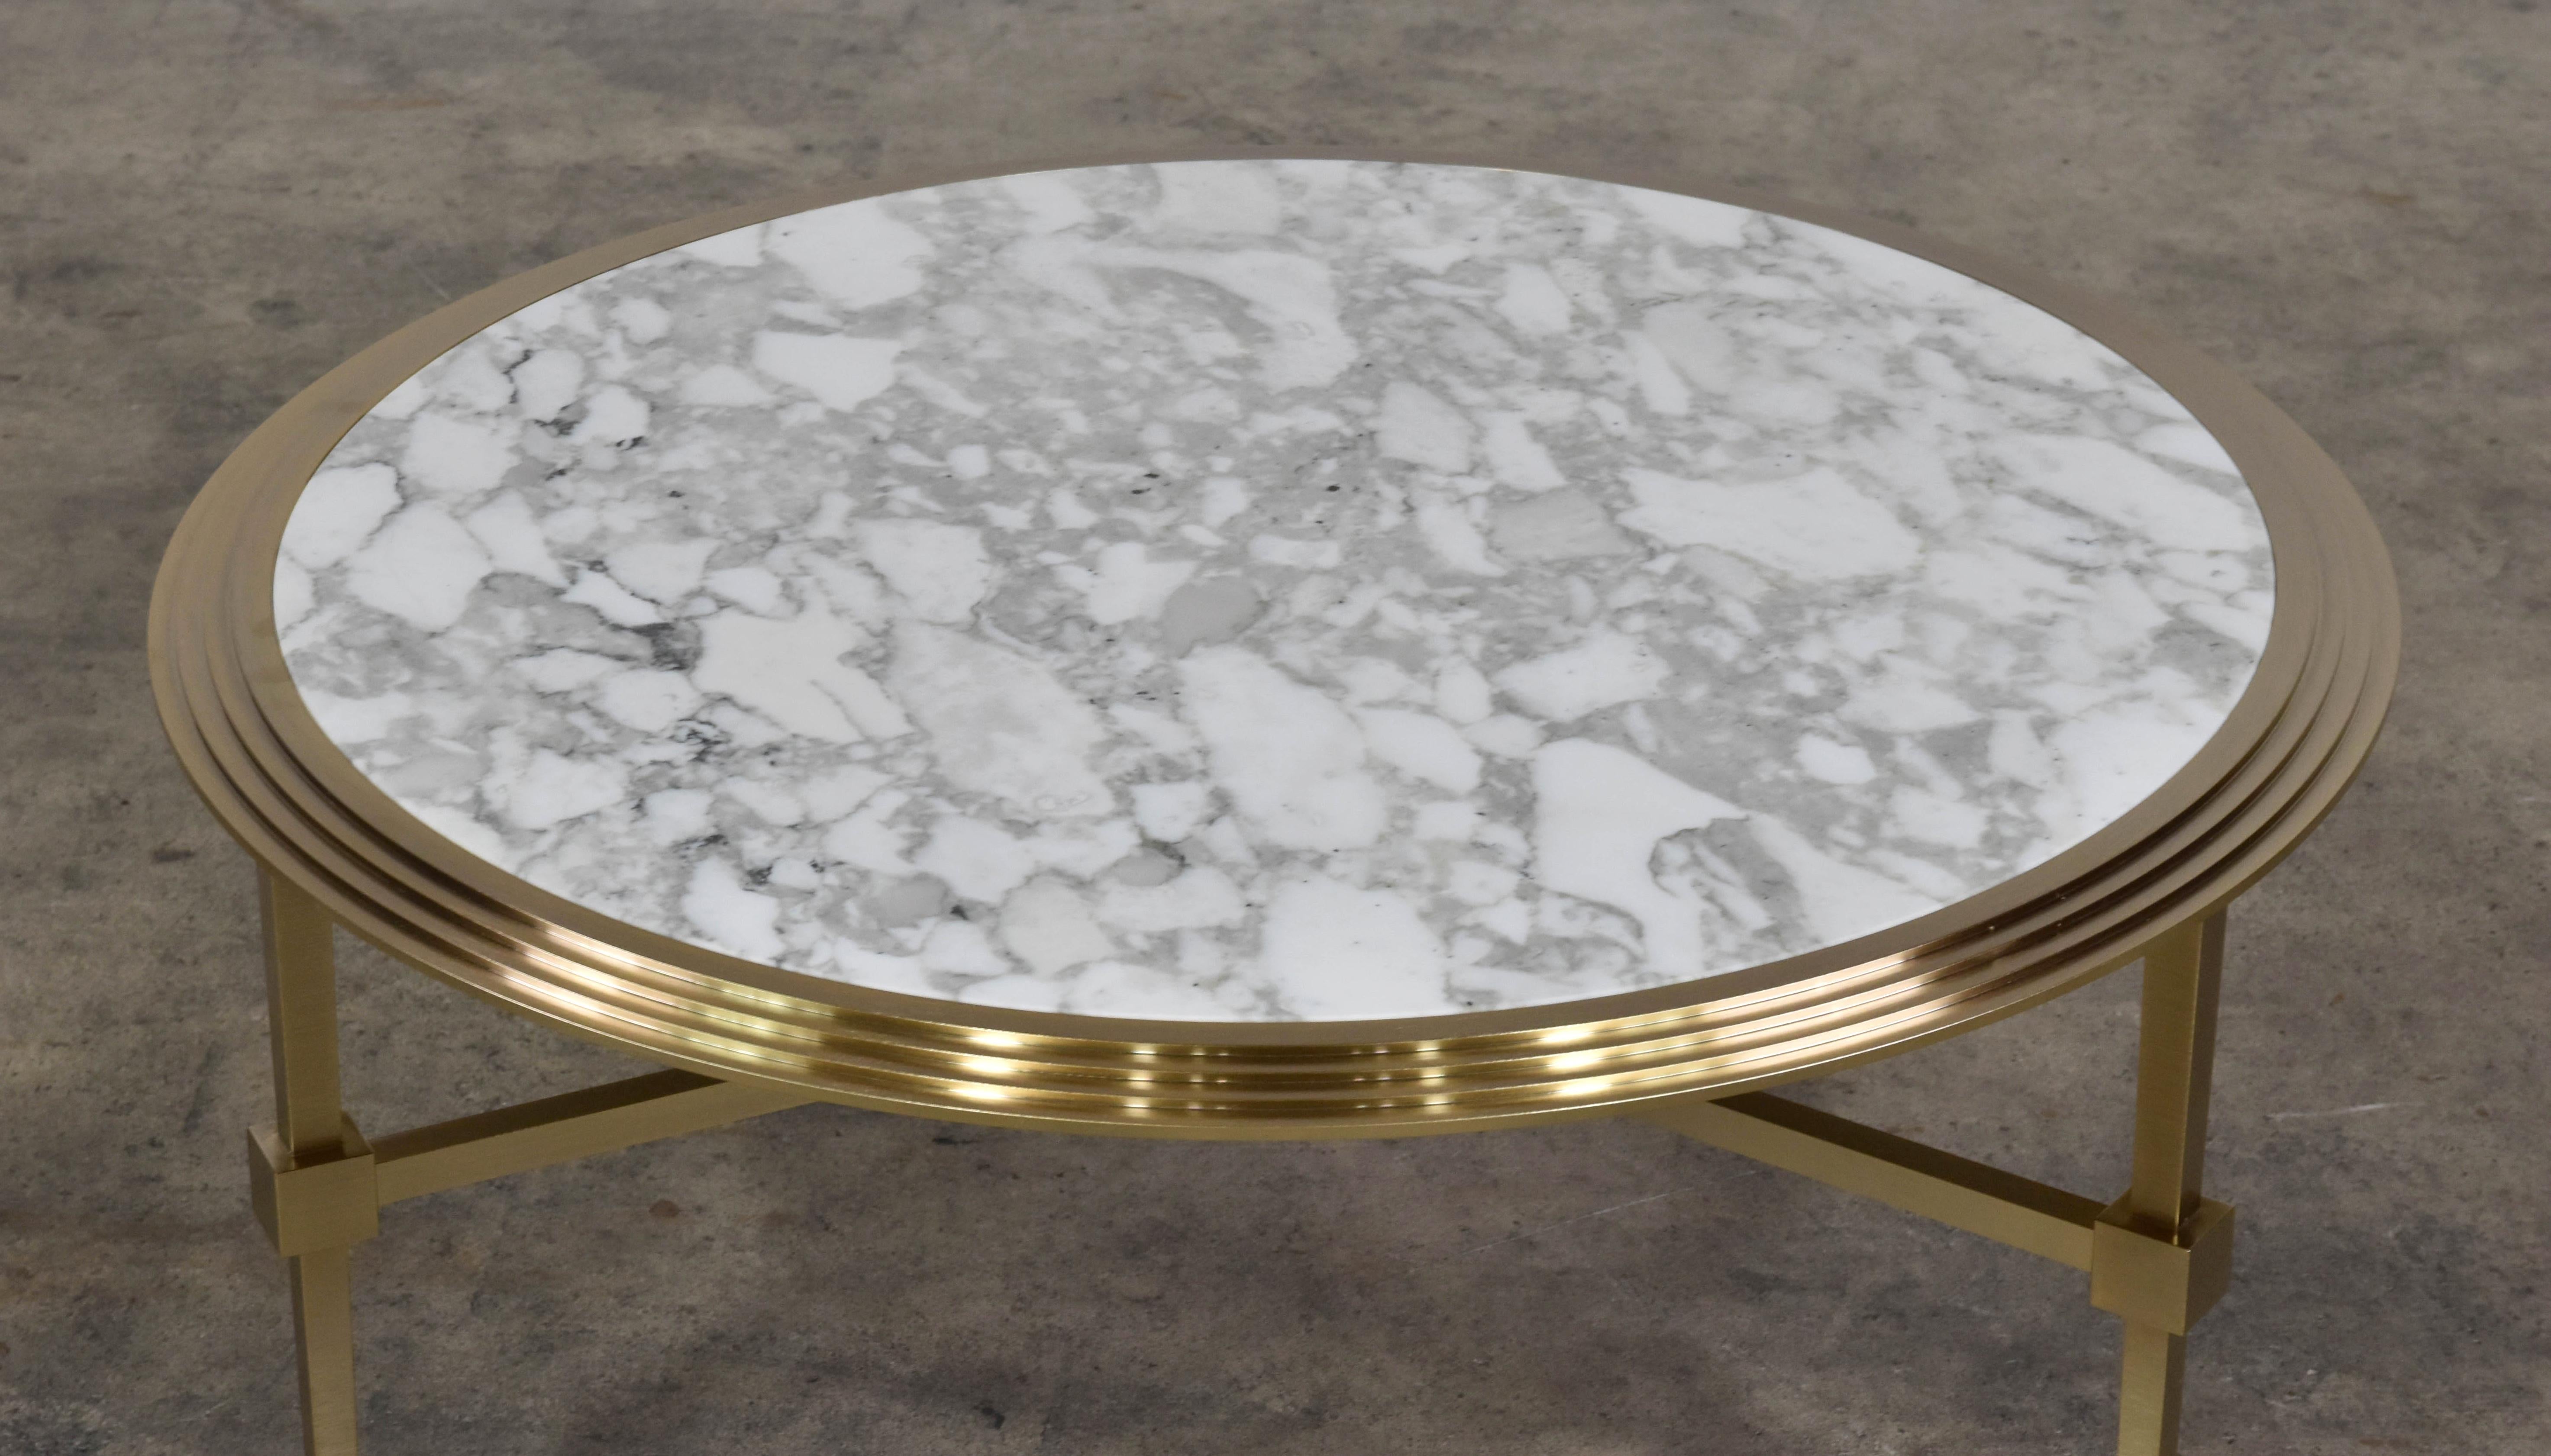 Les tables basses Saturno sont une série de tables basses rondes disponibles en différentes hauteurs et dimensions pour créer des compositions superposées. La couleur de la base est le bronze brossé avec un dessus en marbre de Carrare. Mesure : D